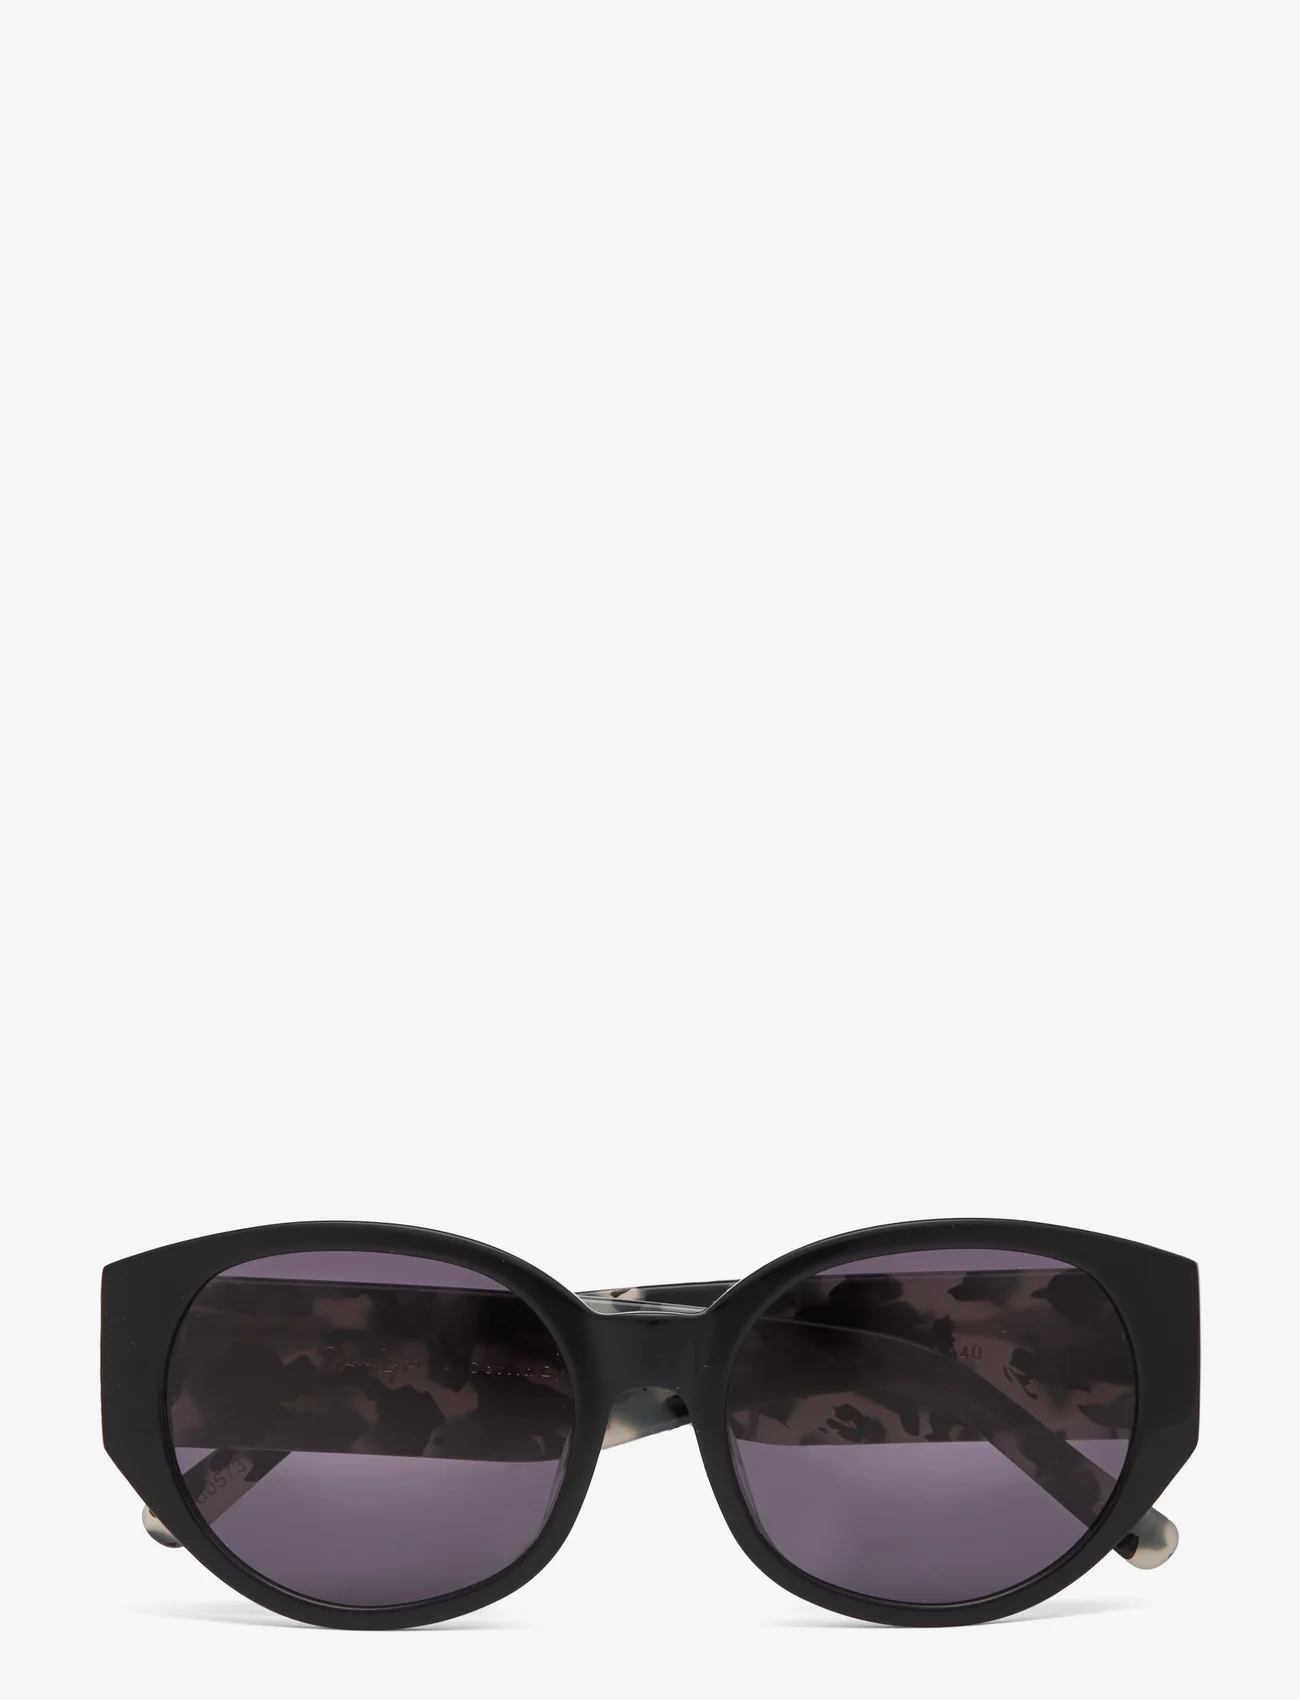 Corlin Eyewear - Windy Black/Grey - pyöreät aurinkolasit - multi coloured - 0